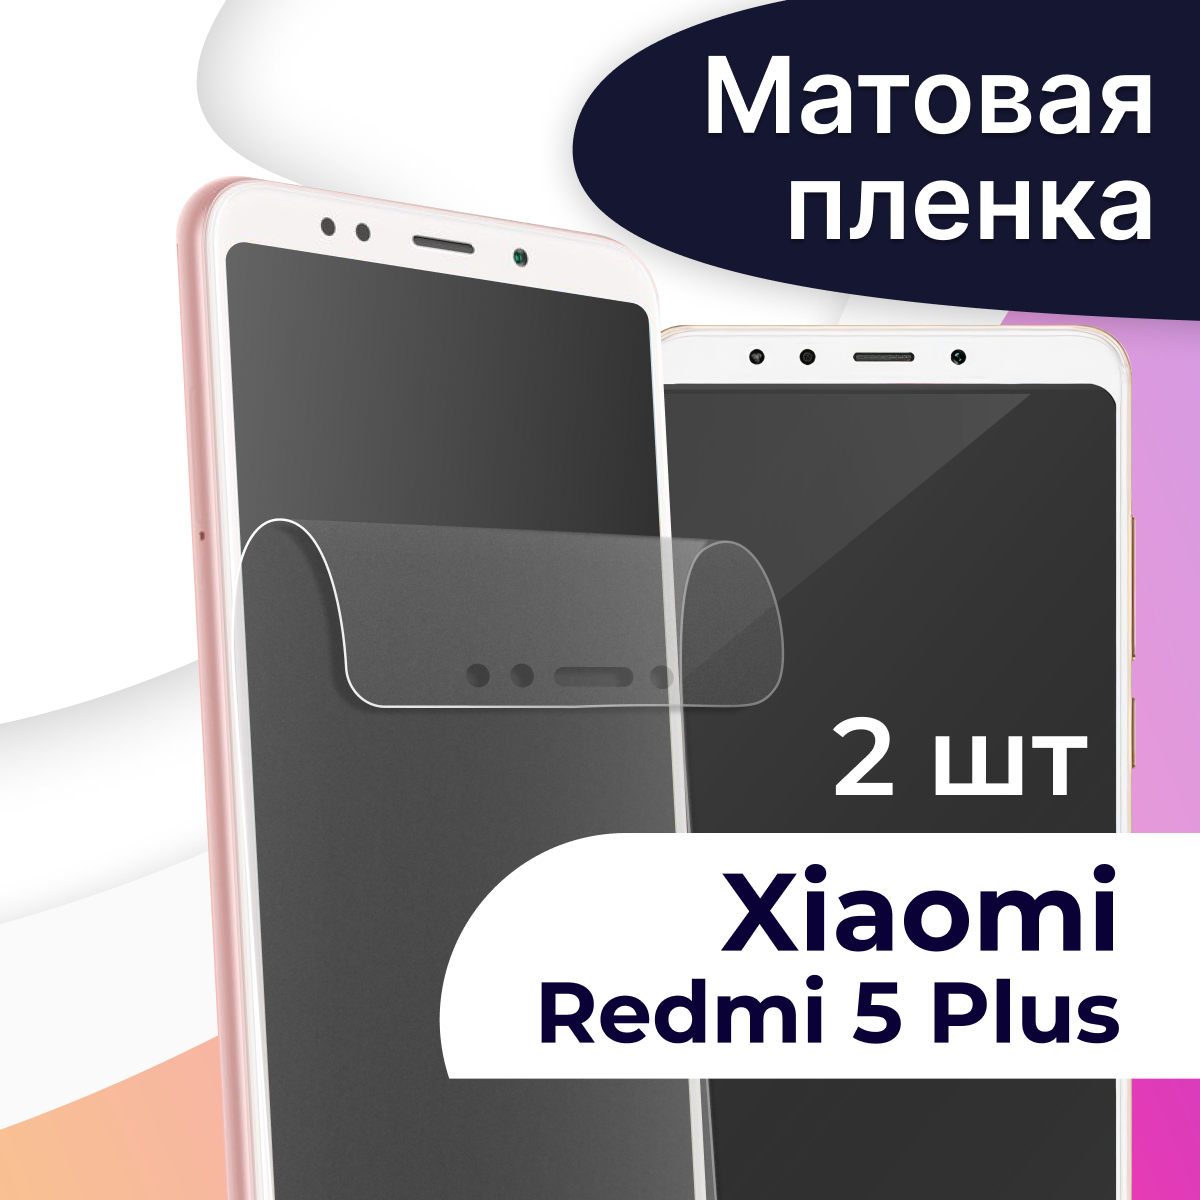 Комплект 2 шт. Матовая пленка на телефон Xiaomi Redmi 5 Plus / Гидрогелевая противоударная пленка для смартфона Сяоми Редми 5 Плюс / Защитная пленка